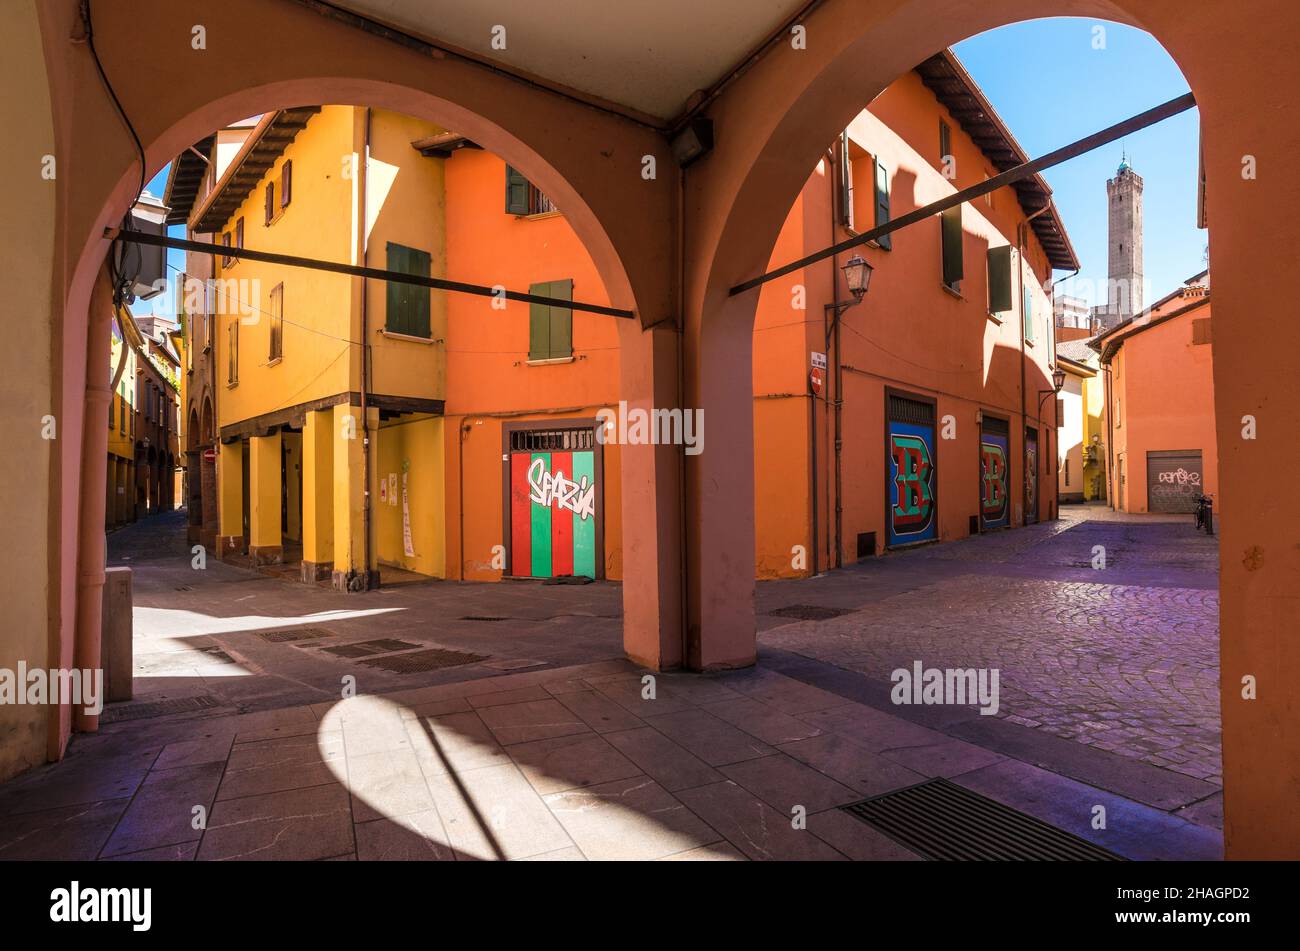 Bologne (Italie) - Une vue sur le centre historique de Bologne, la ville des porches et la capitale de la région d'Émilie-Romagne, au nord de l'Italie Banque D'Images